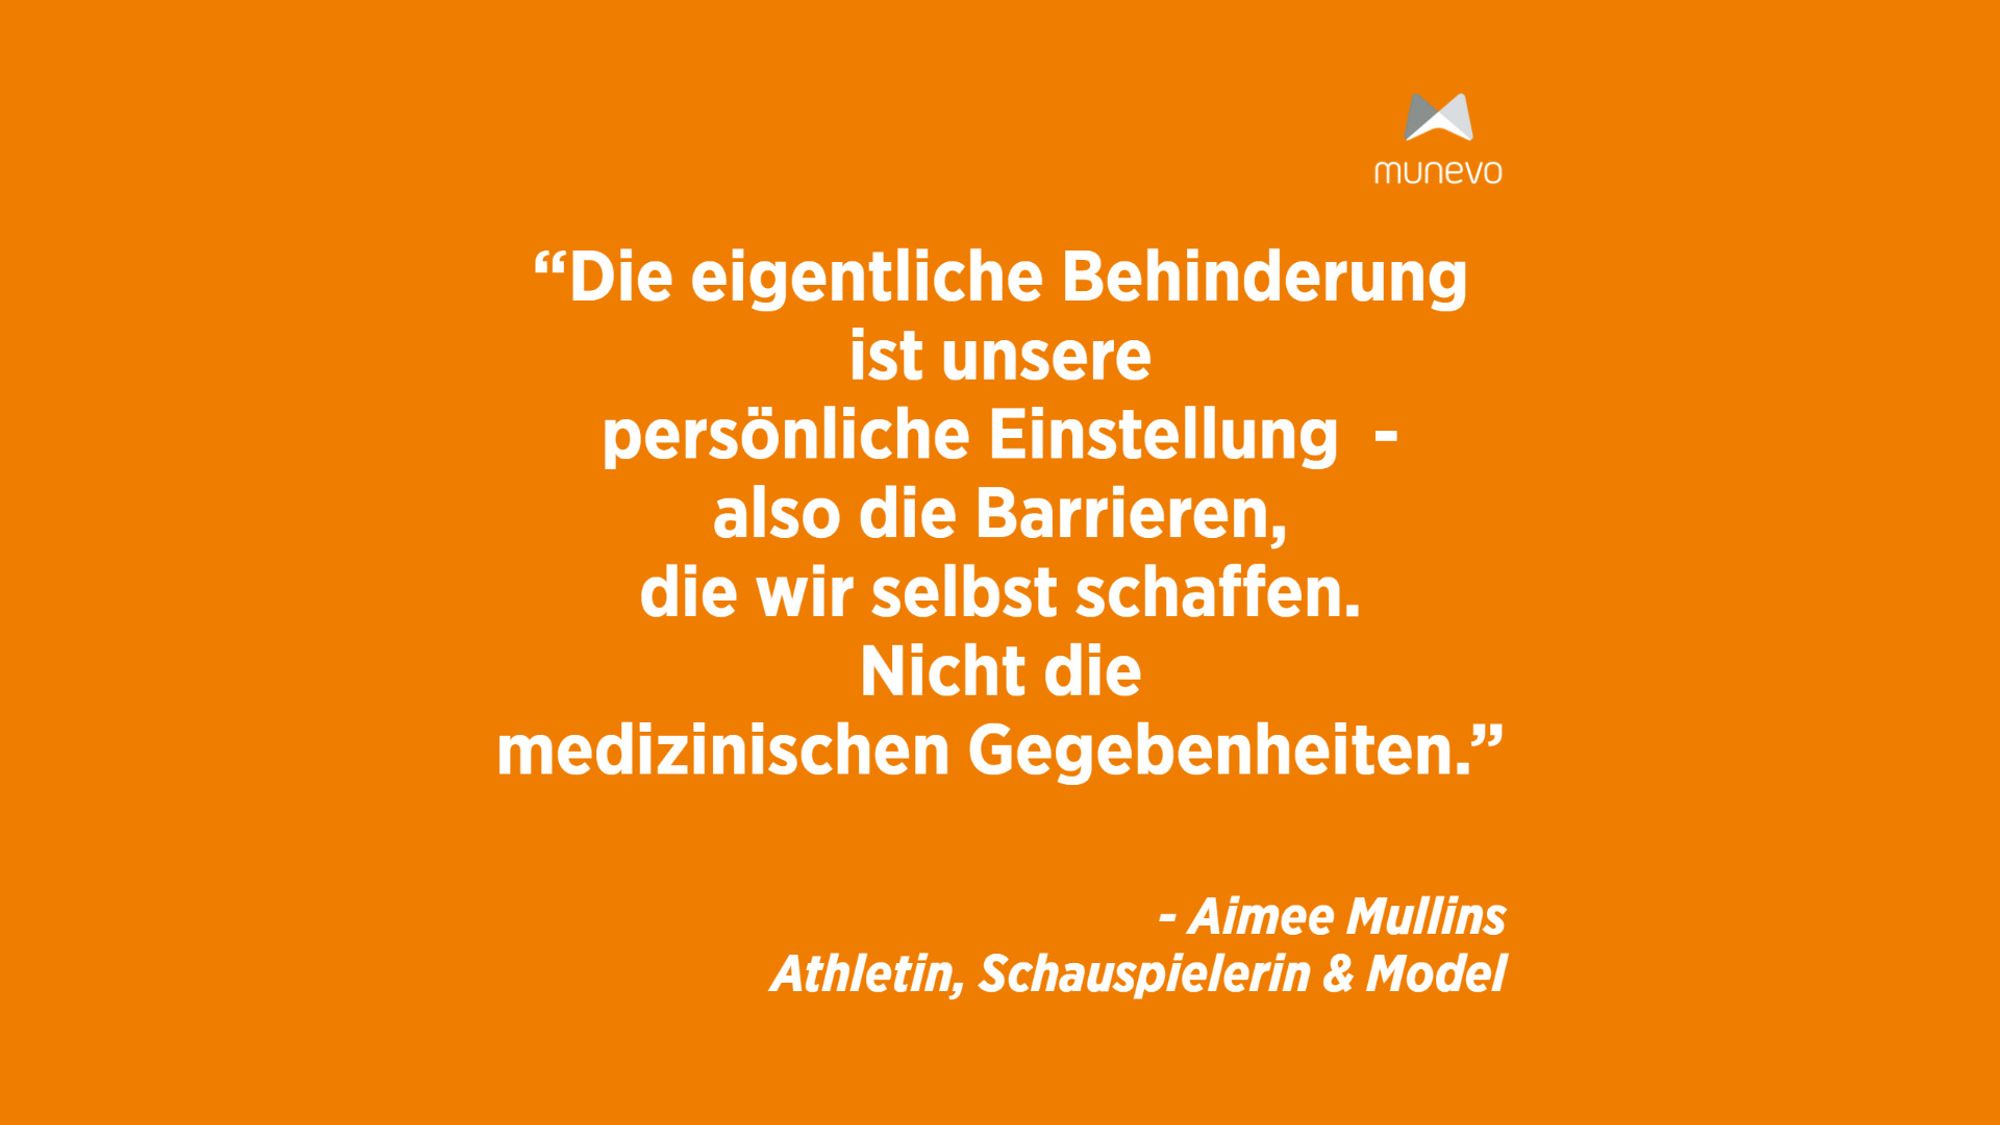 "Die eigentliche Behinderung ist unsere persönliche Einstellung - also die Barrieren, die wir selbst schaffen. Nicht die medizinischen Gegebenheiten." - Aimee Mullins Athletin, Schauspielerin & Model